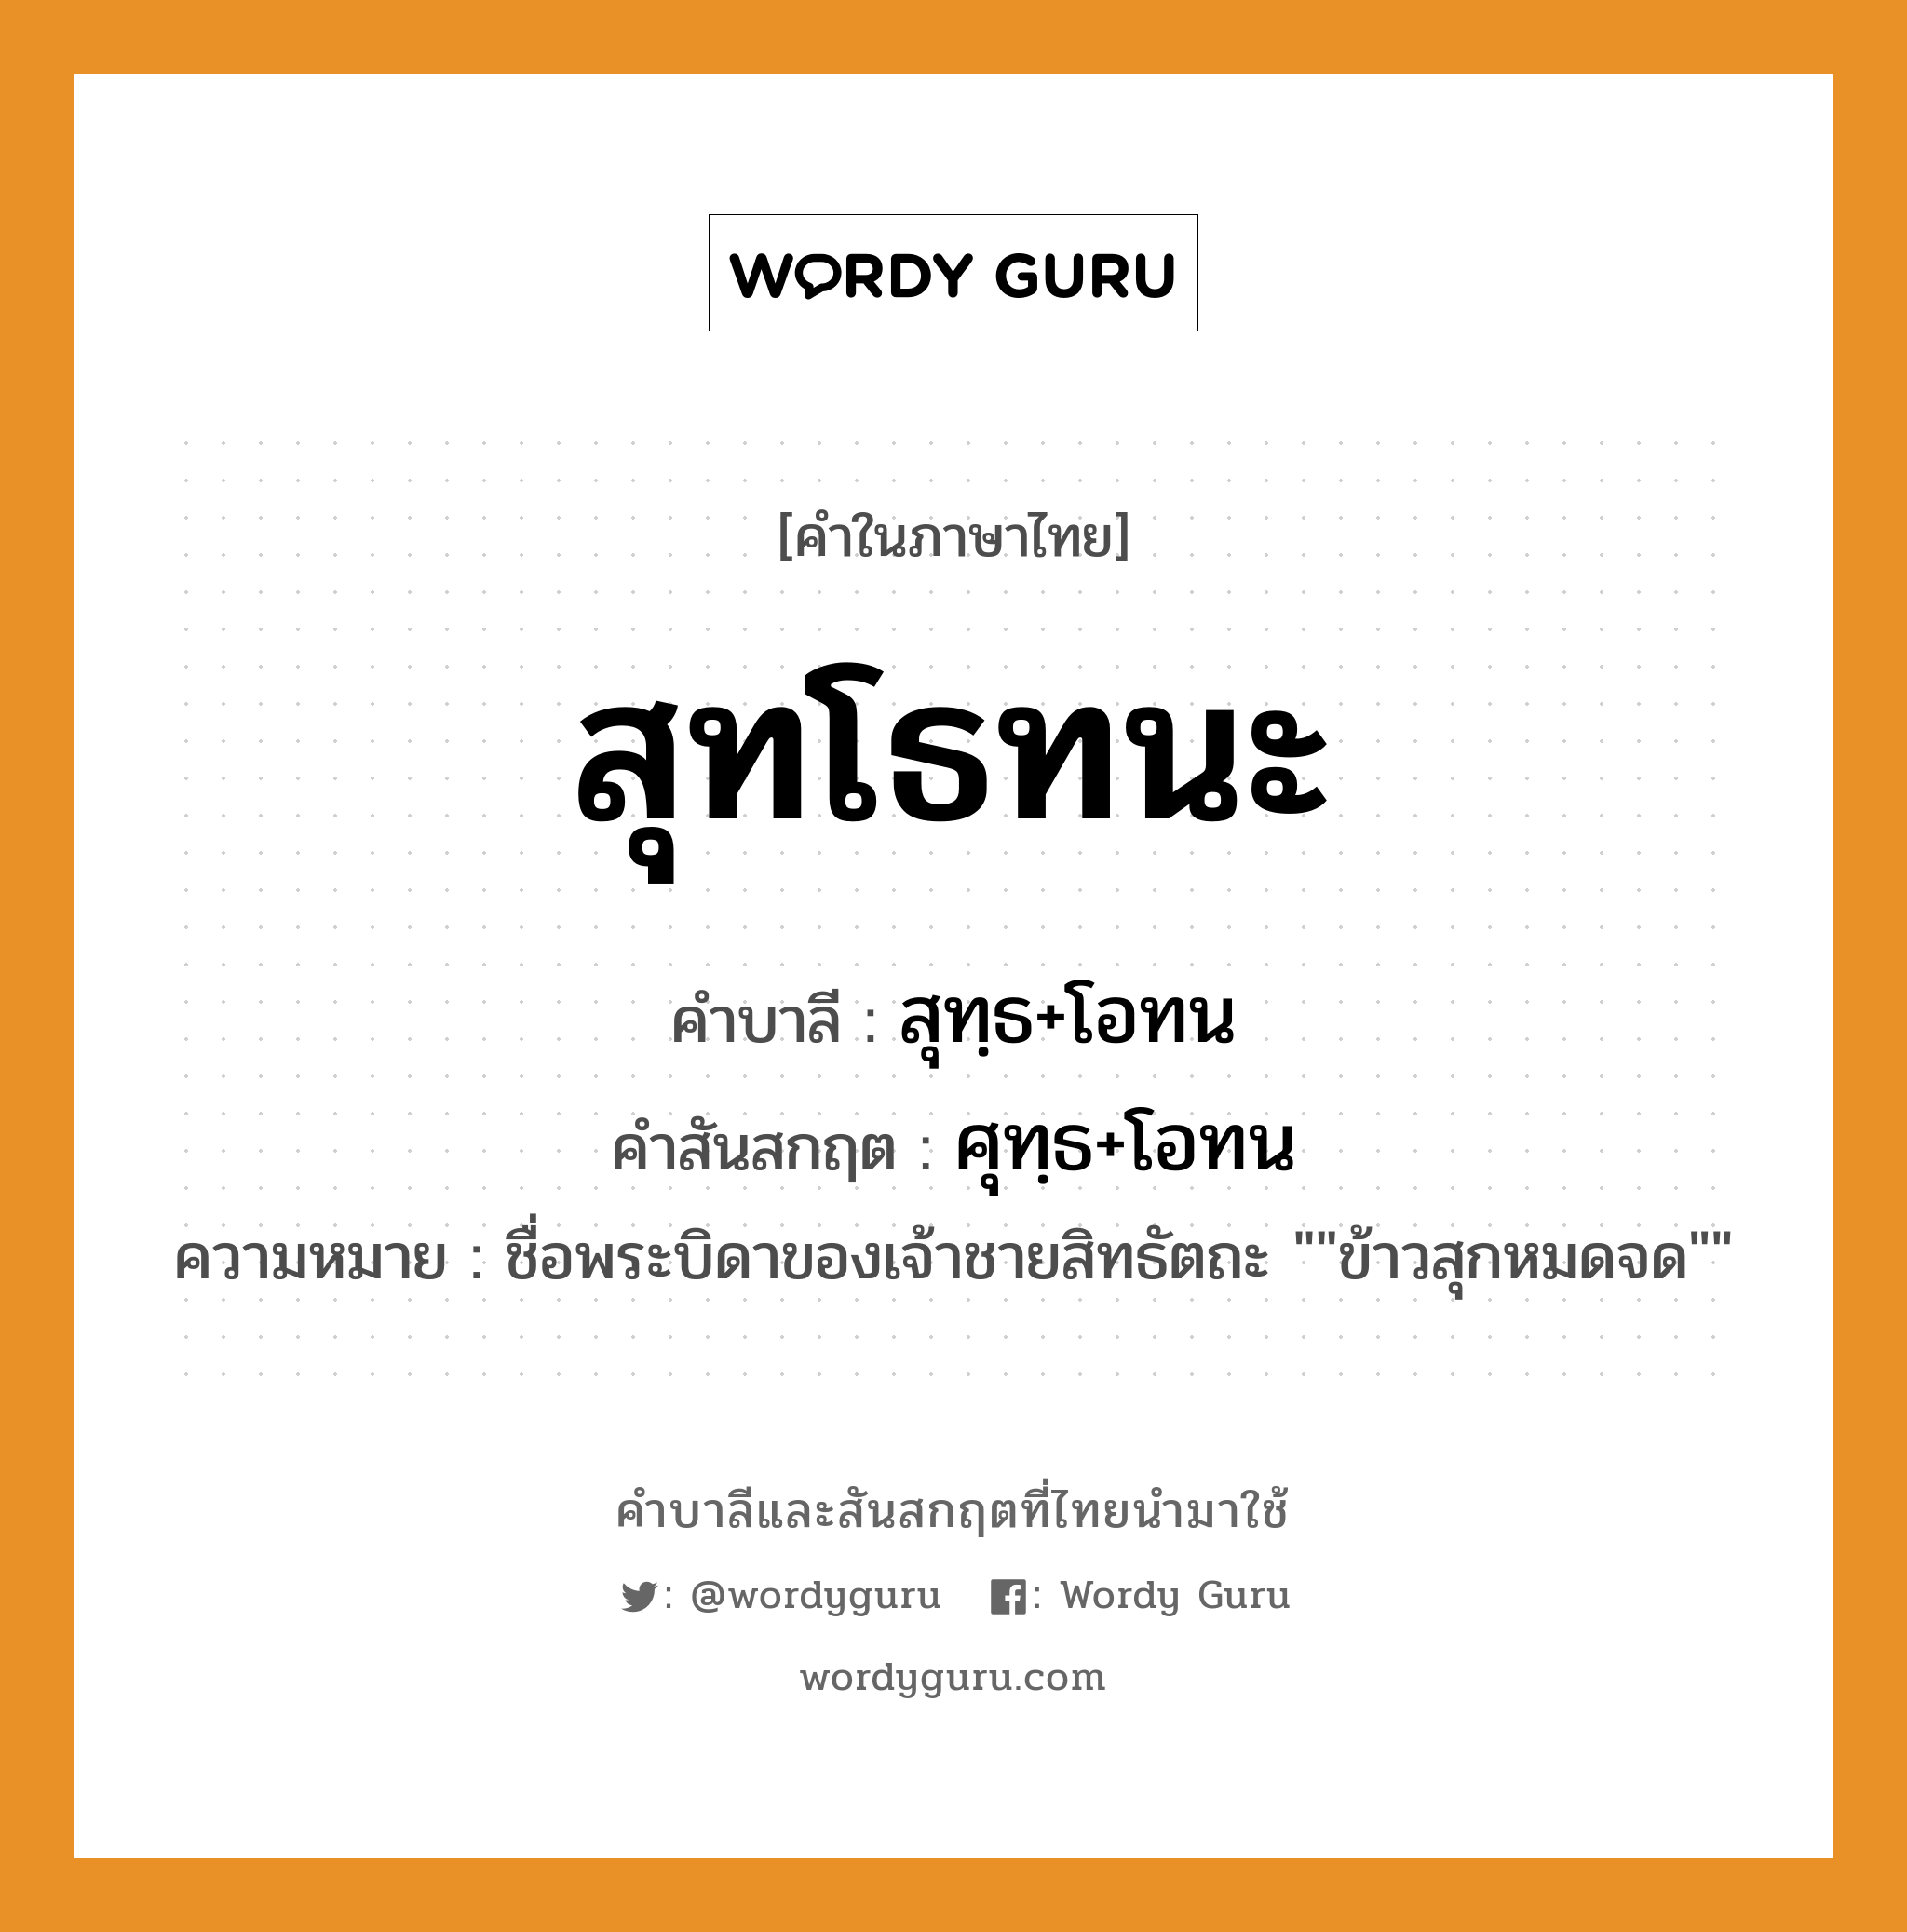 สุทโธทนะ บาลี สันสกฤต?, คำบาลีและสันสกฤต สุทโธทนะ คำในภาษาไทย สุทโธทนะ คำบาลี สุทฺธ+โอทน คำสันสกฤต ศุทฺธ+โอทน ความหมาย ชื่อพระบิดาของเจ้าชายสิทธัตถะ ""ข้าวสุกหมดจด""